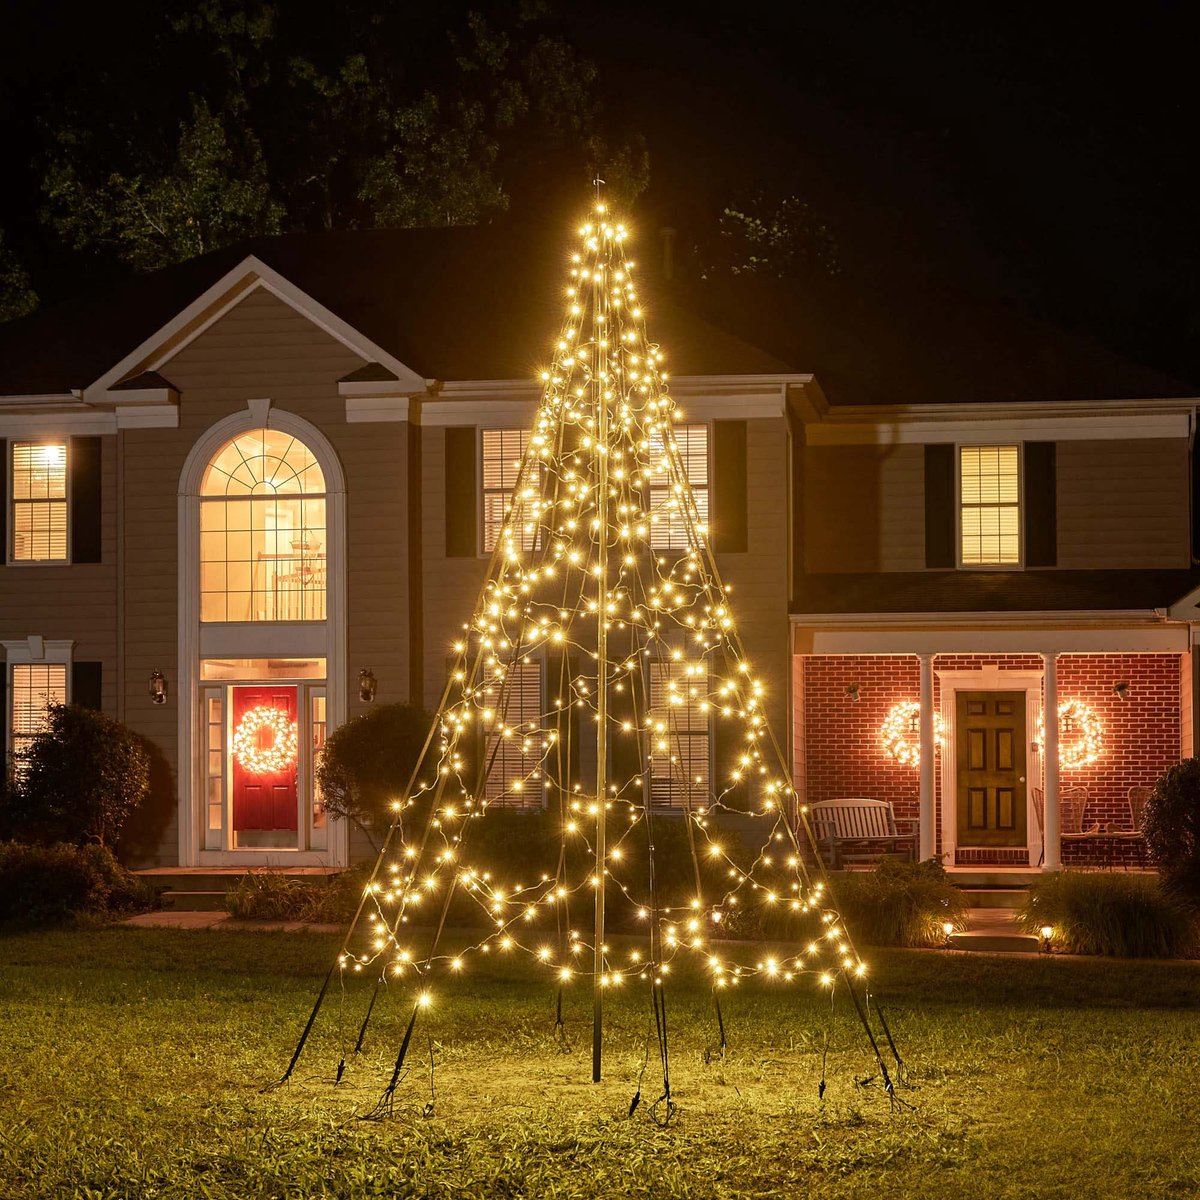 Fairybell vlaggenmast kerstboom - 300 cm - 480 twinkelende & warm witte ledlampjes - inclusief vlaggenmast